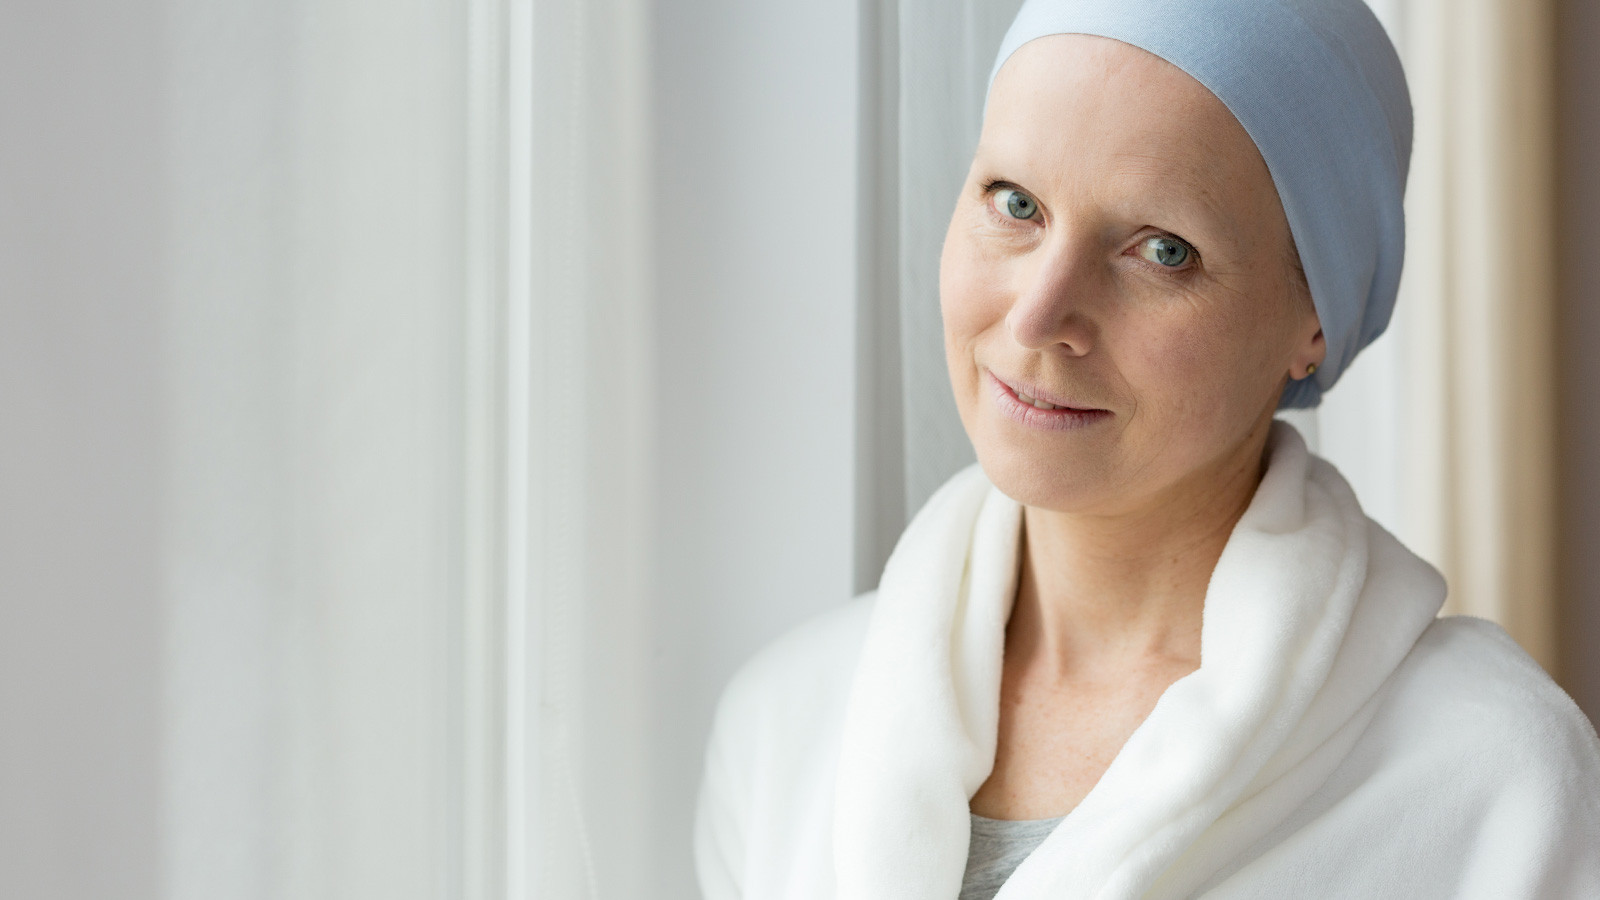 Göğüs kanseri tüm kadınların gerekli önlemleri alması gereken ciddi bir hastalıktır.